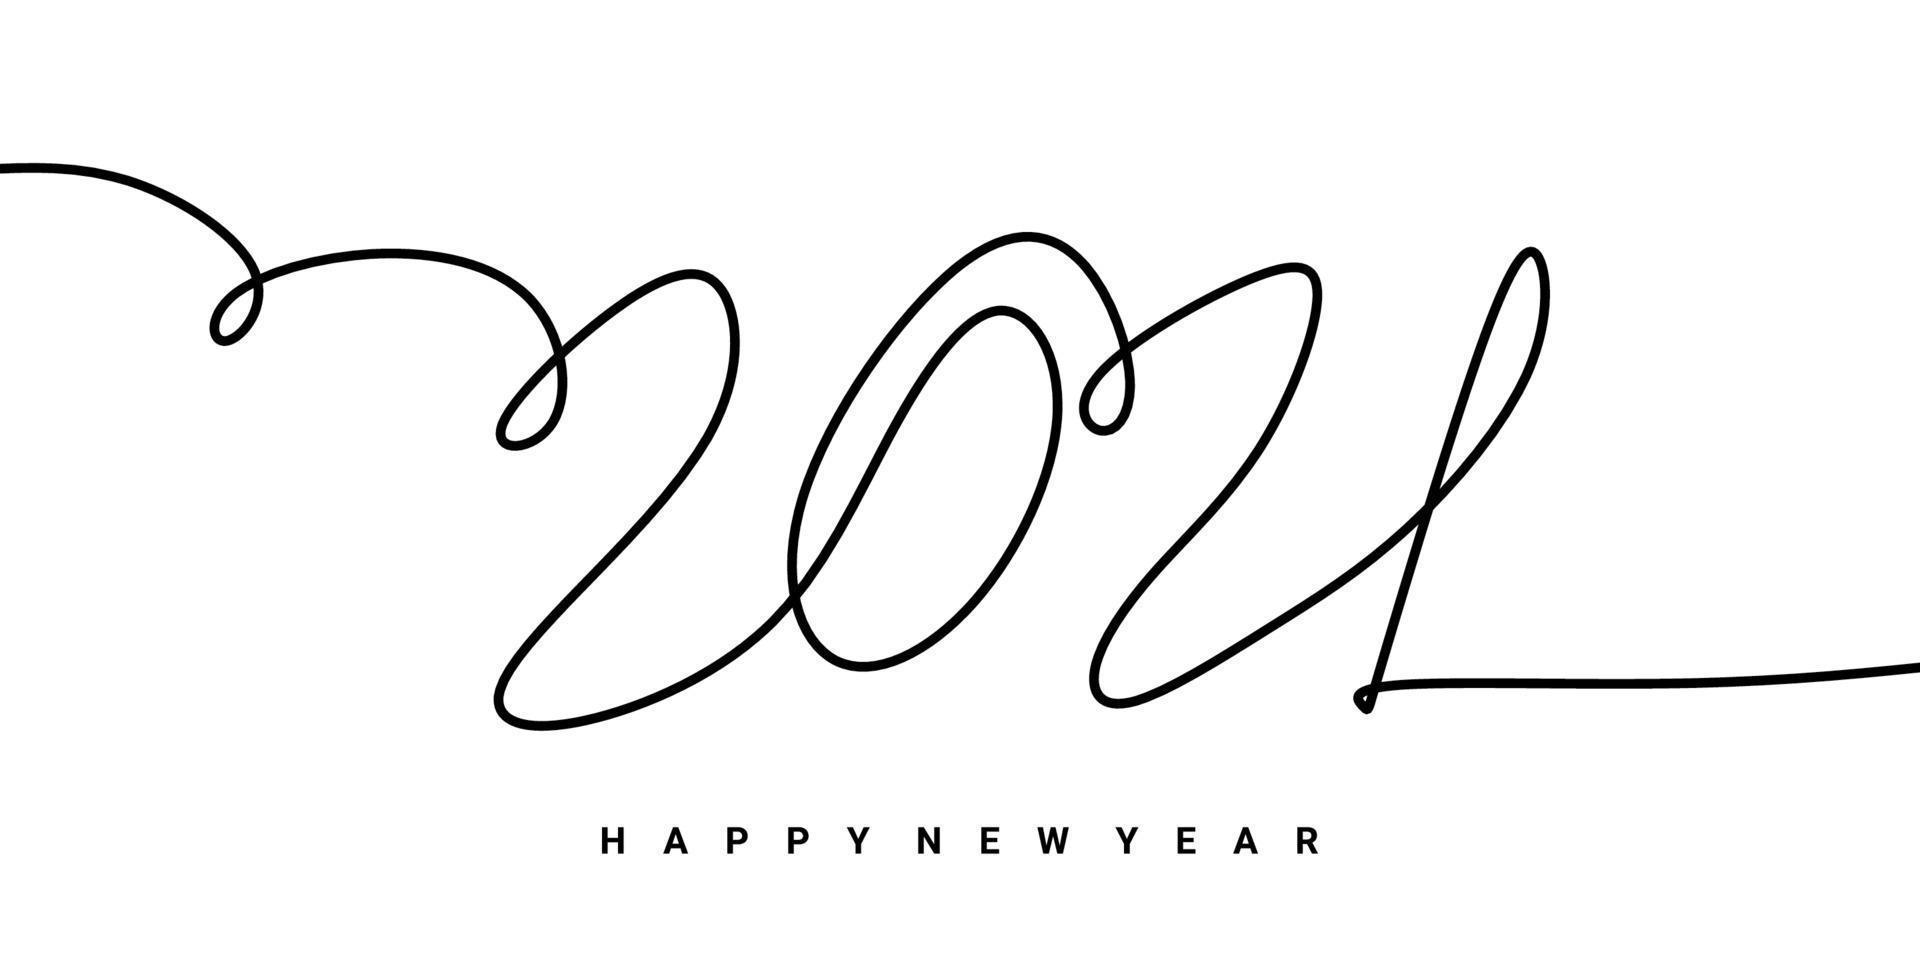 2021 bonne année conception de signature de dessin à la main de contour continu unique. célébration du nouvel an concept isolé sur fond blanc. vecteur